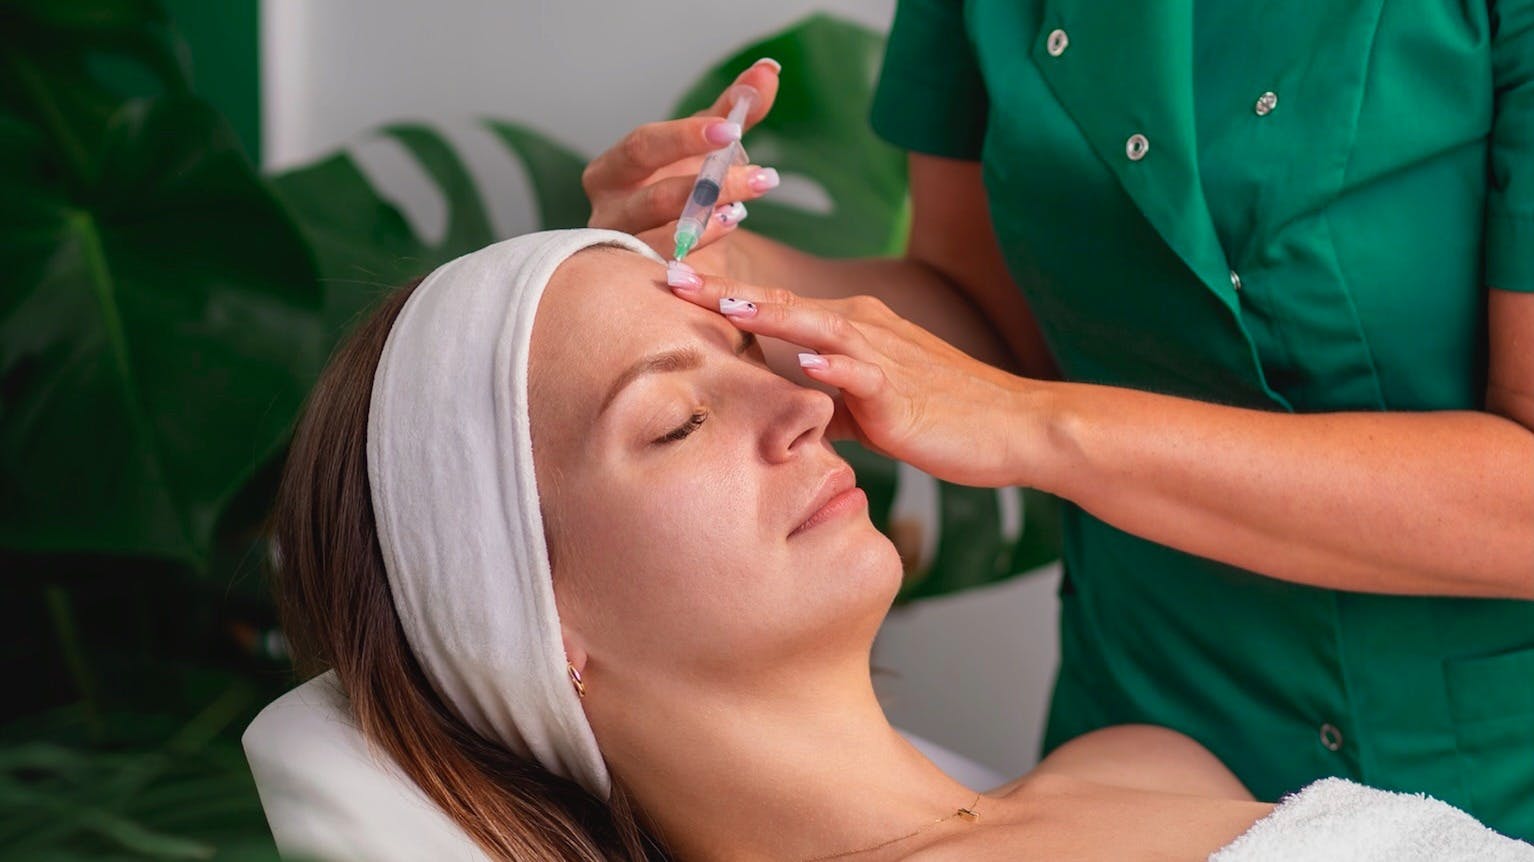 kosmetolog wstrzykuje preparat w trakcie zabiegu mezoterapii iglowej w salonie kosmetycznym health beauty w krakowie